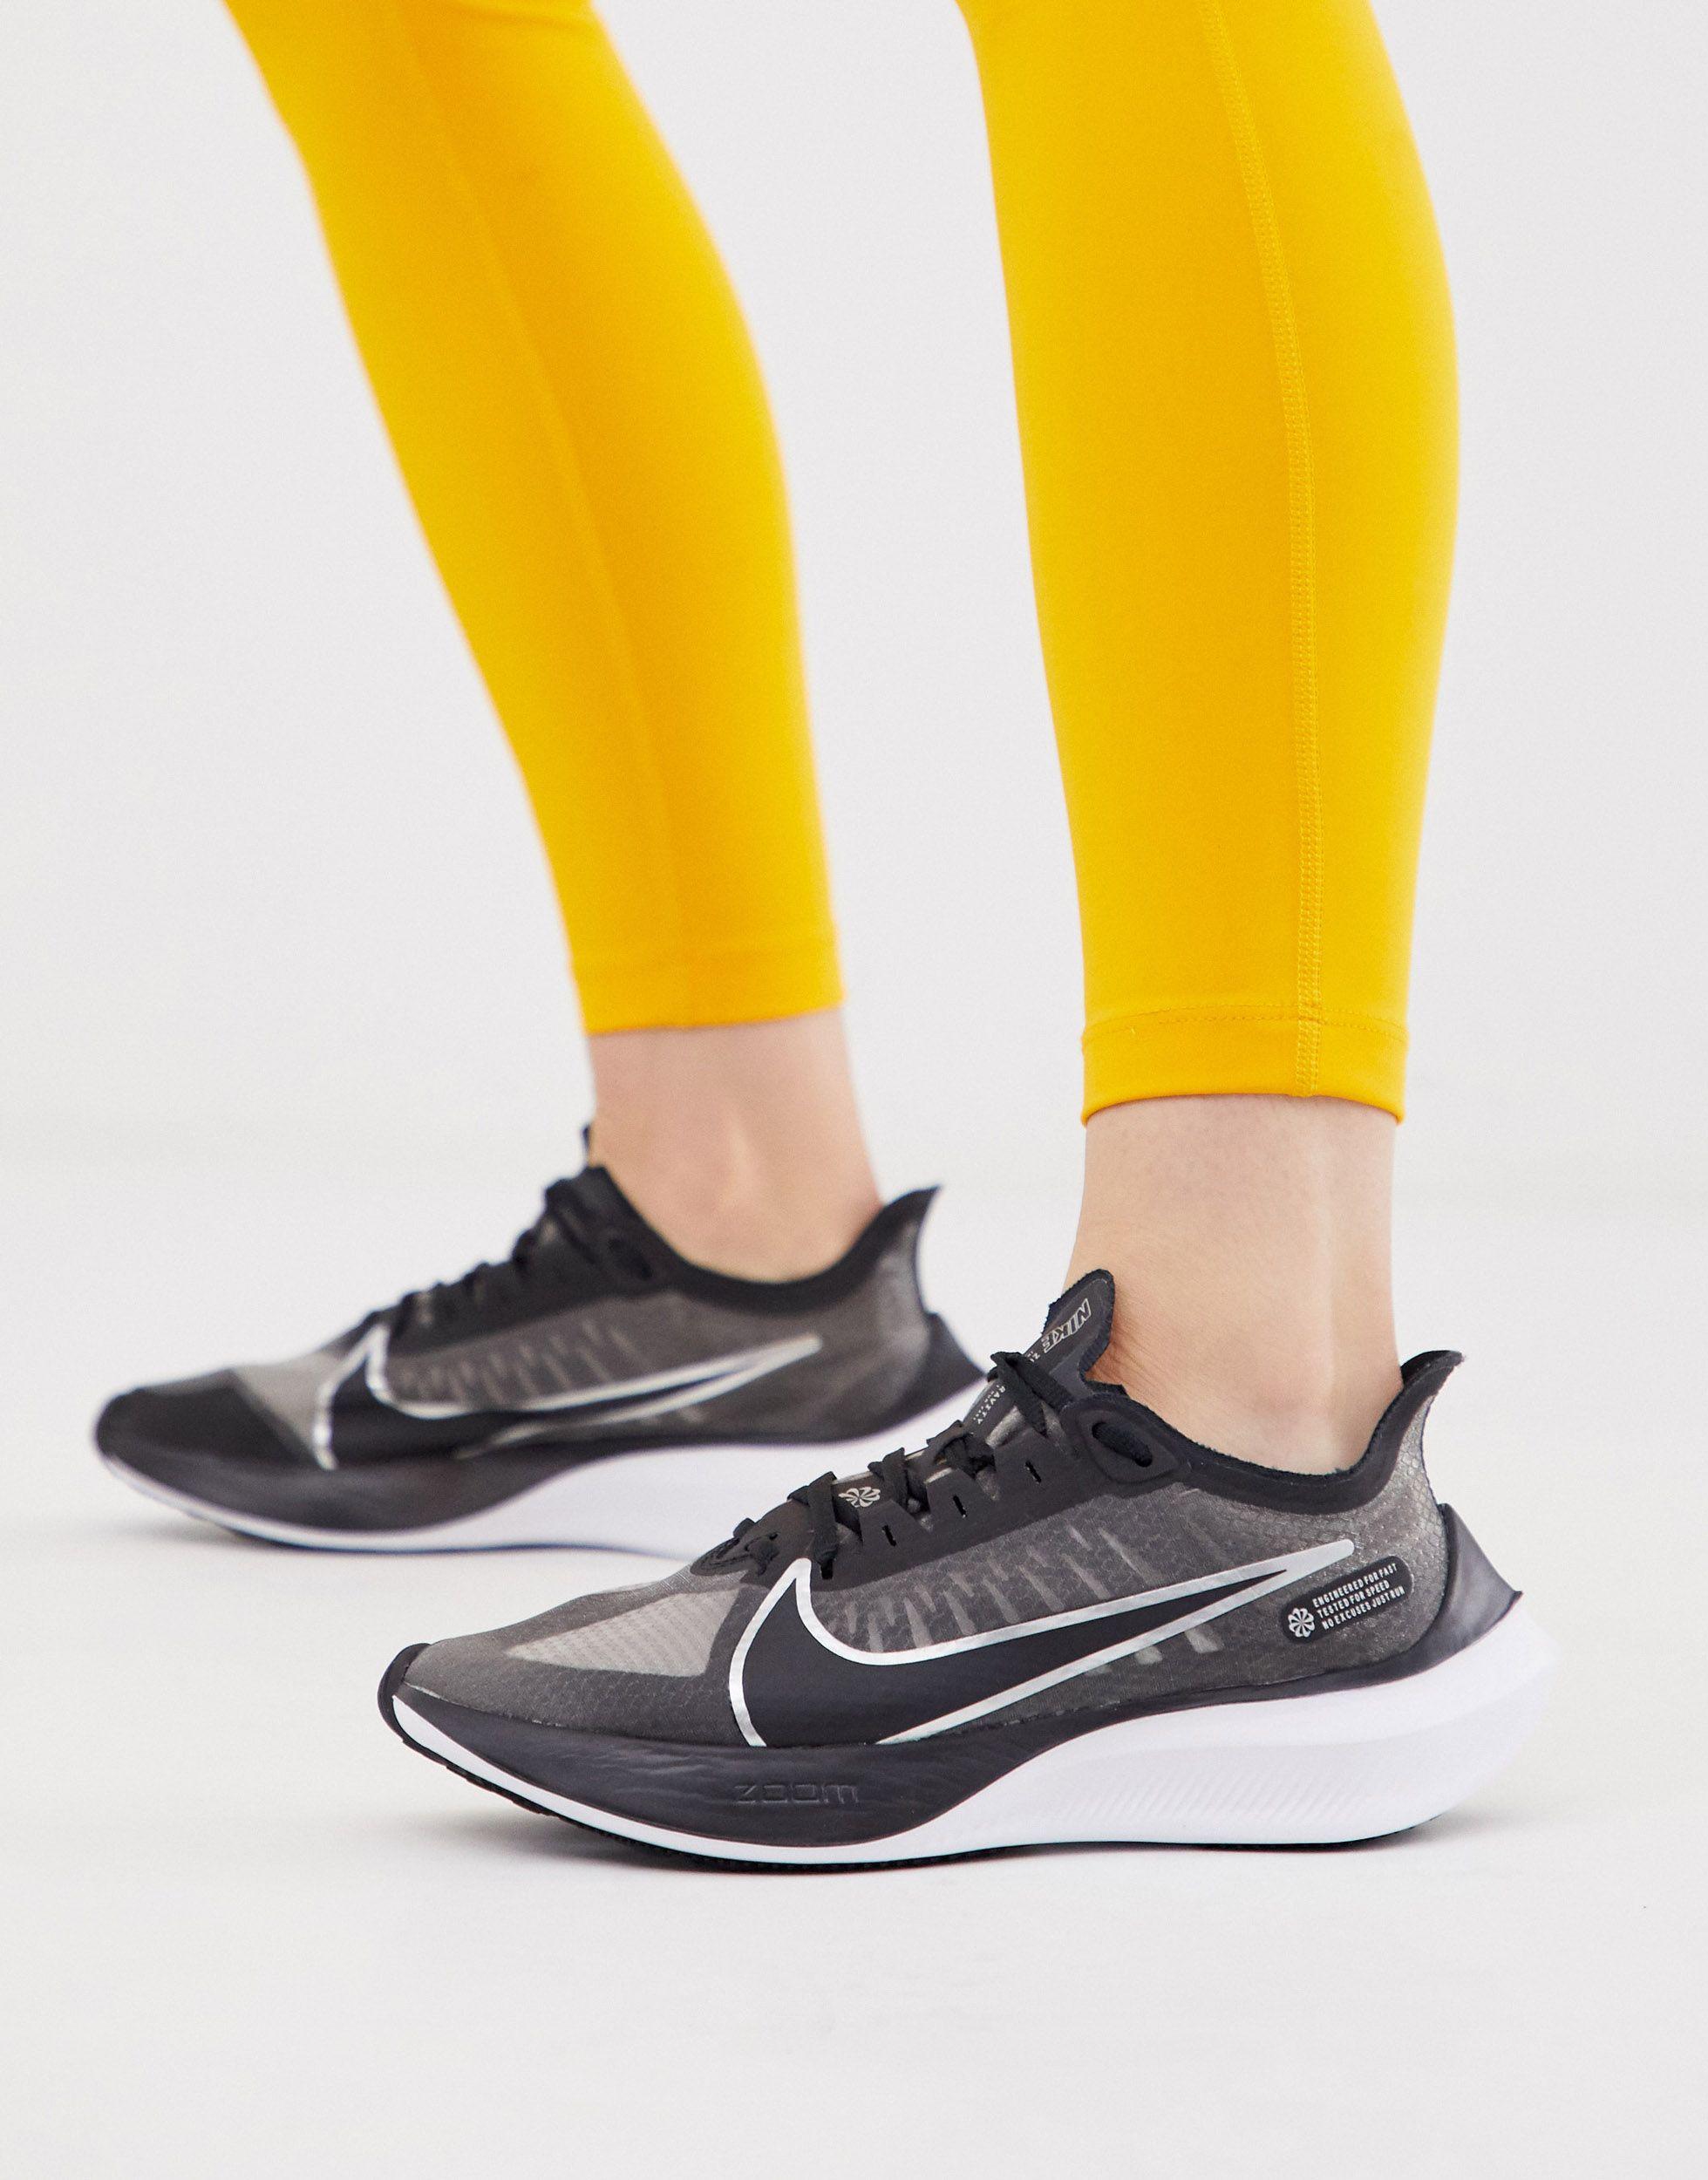 nike women's zoom gravity running shoes